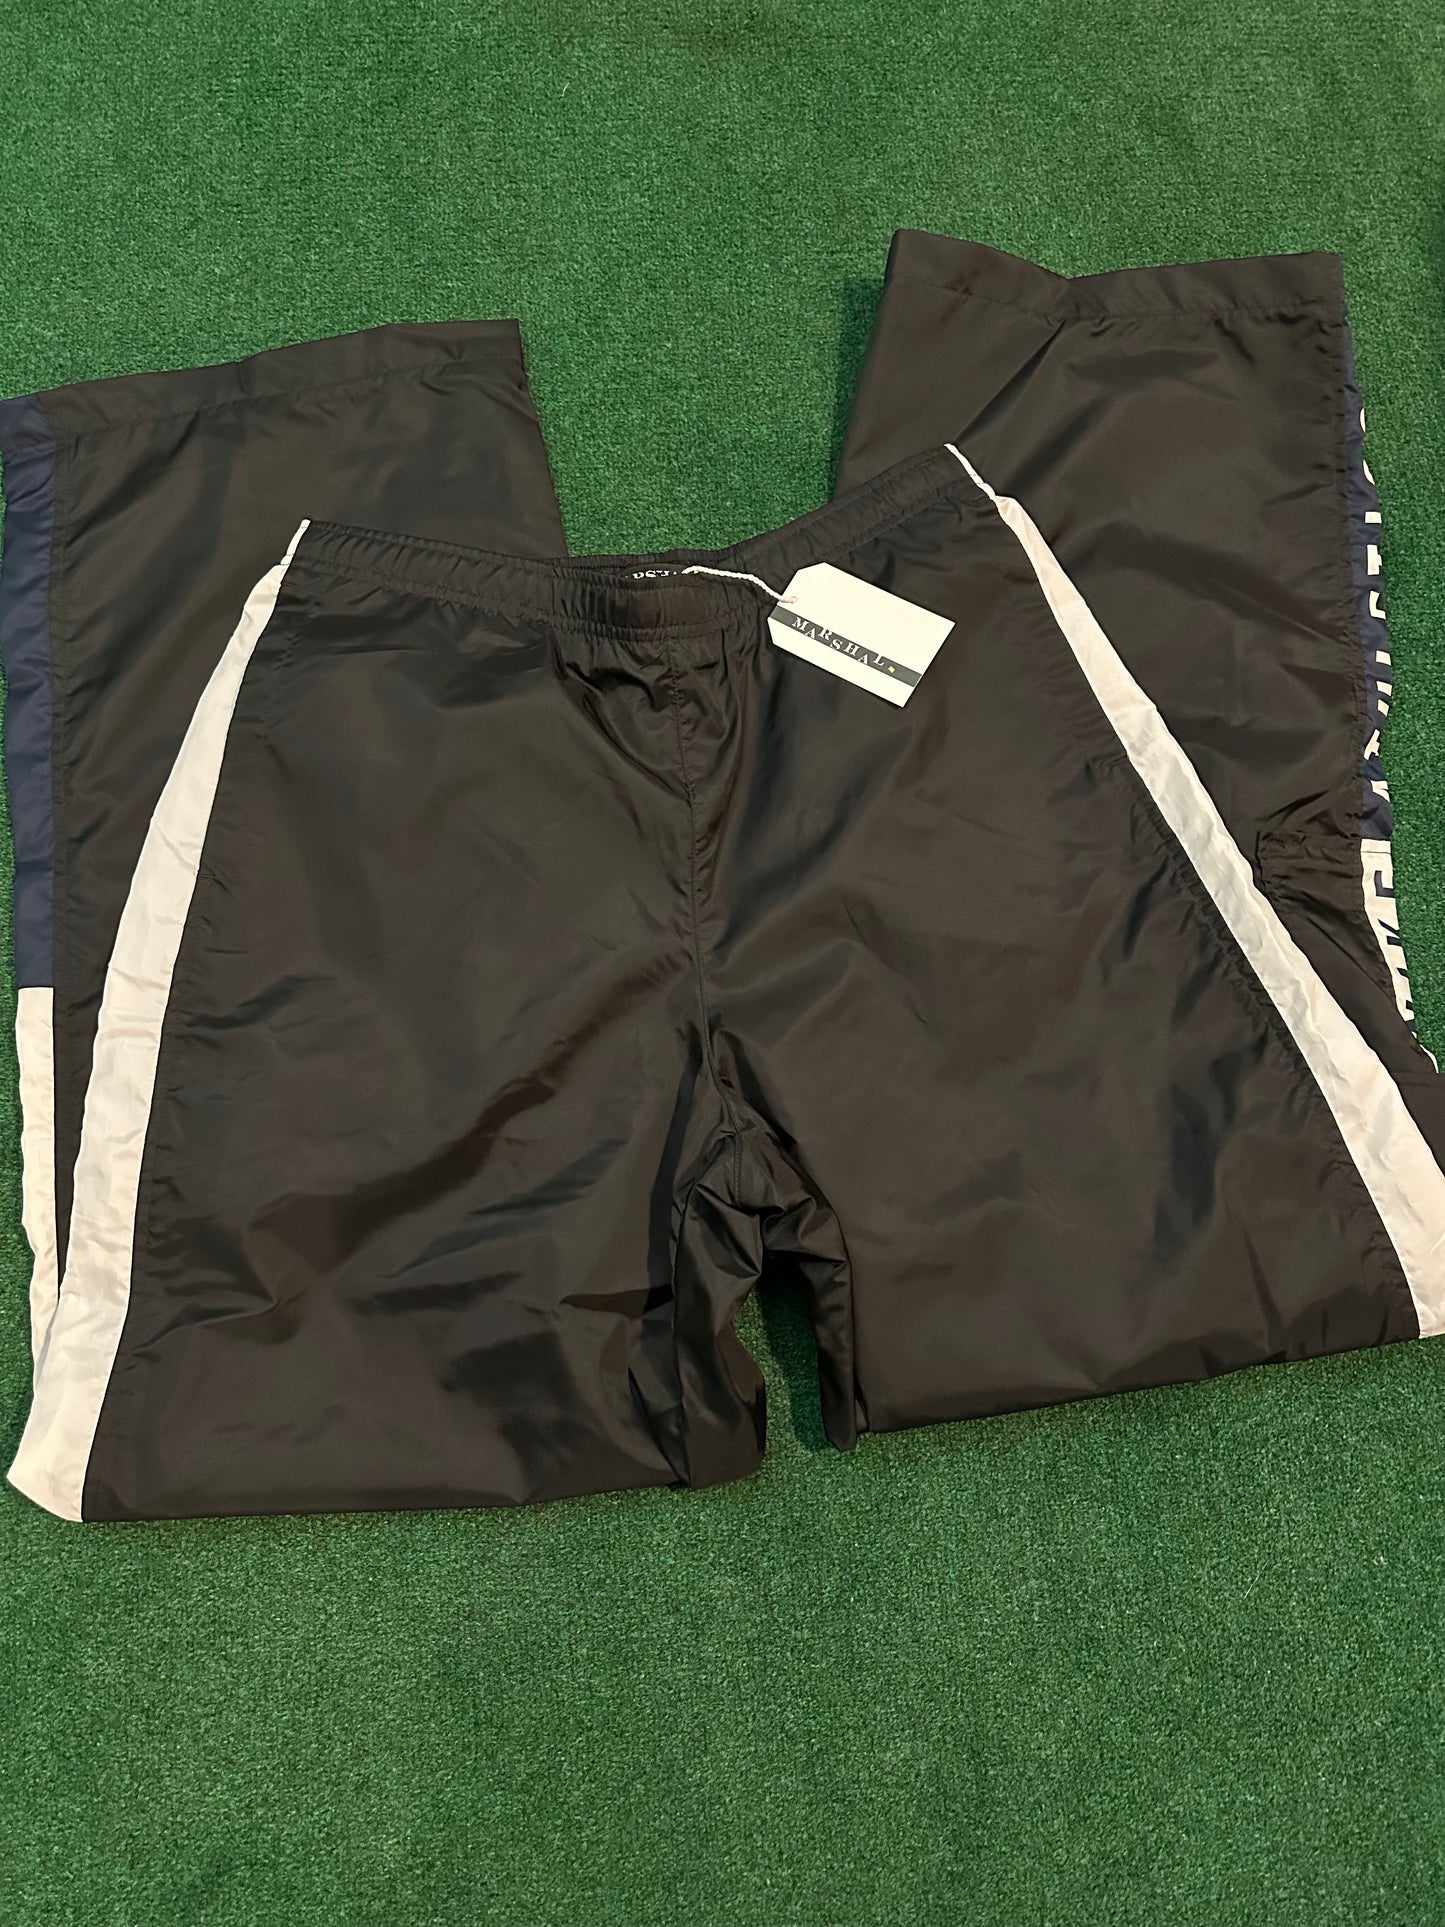 Vintage Nike Athletics Track Pants